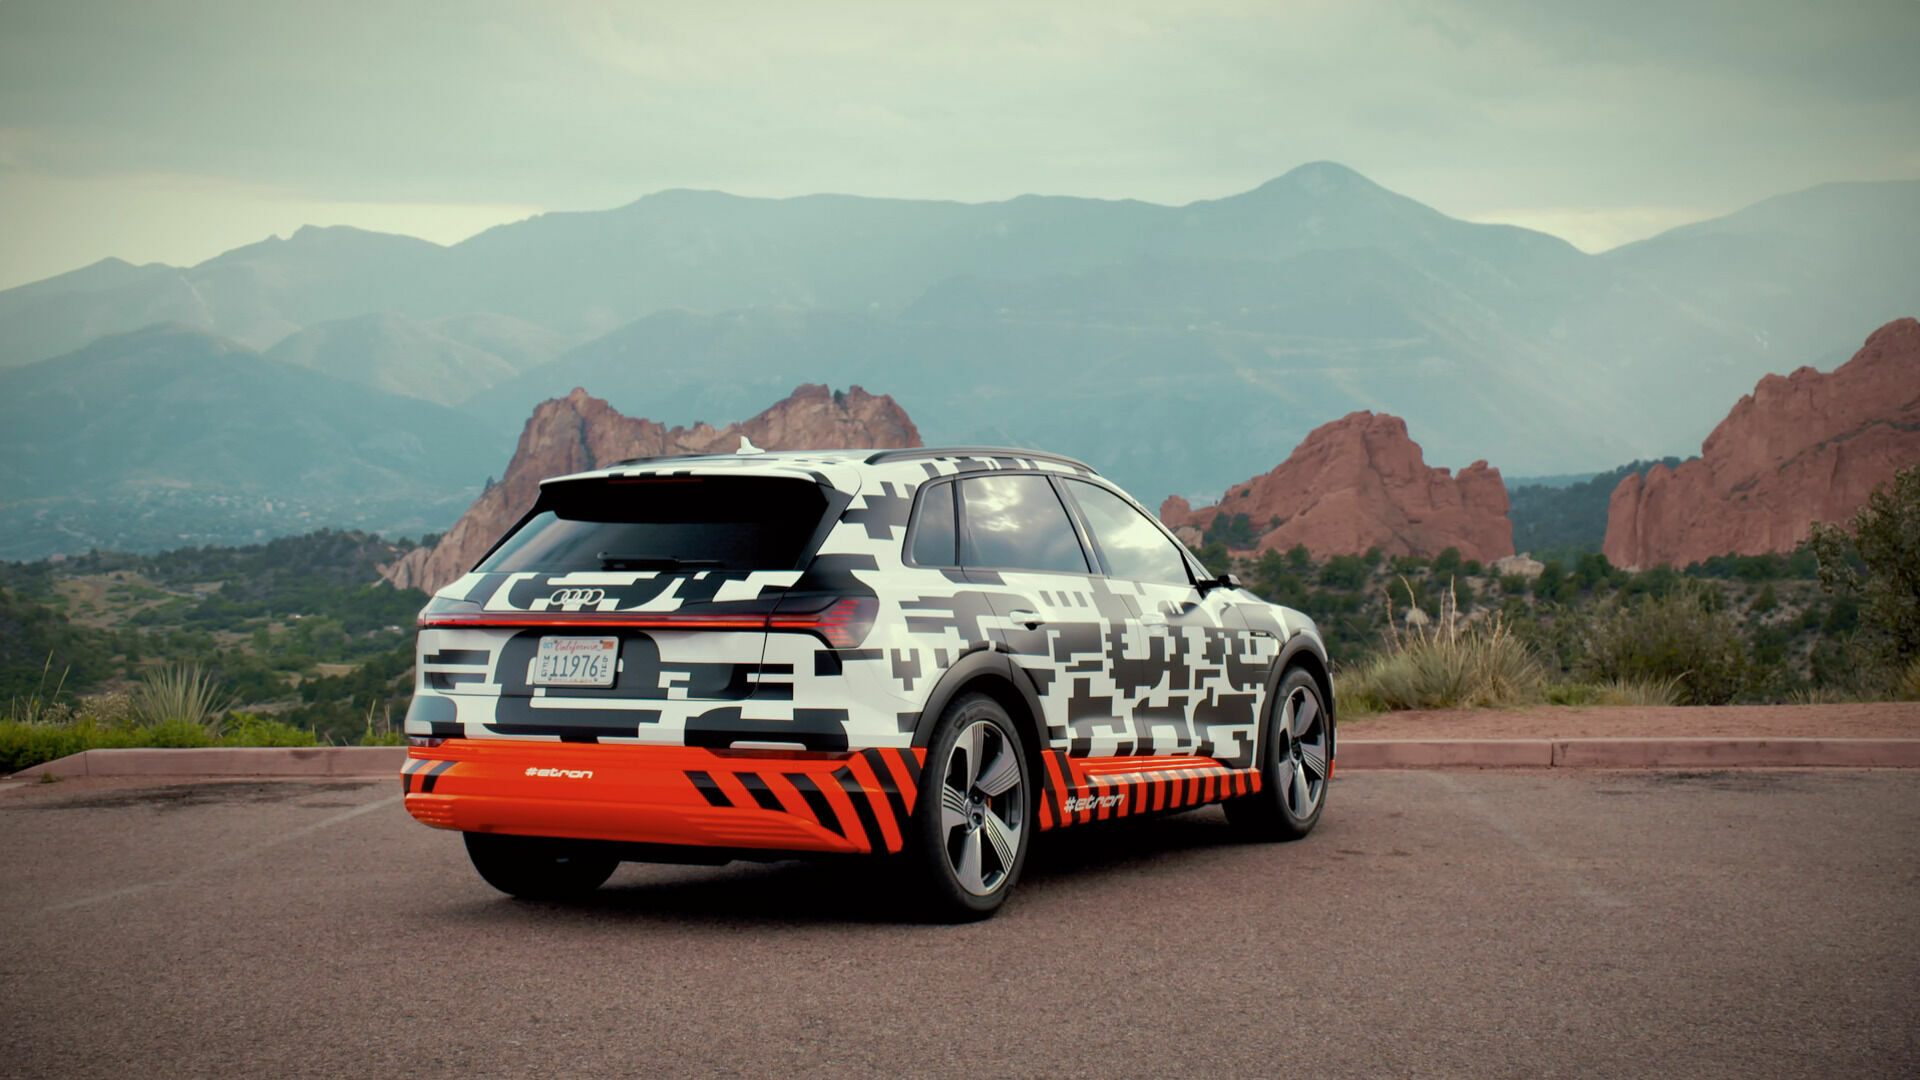 Audi e-tron prototype extreme: Recuperation test at Pikes Peak